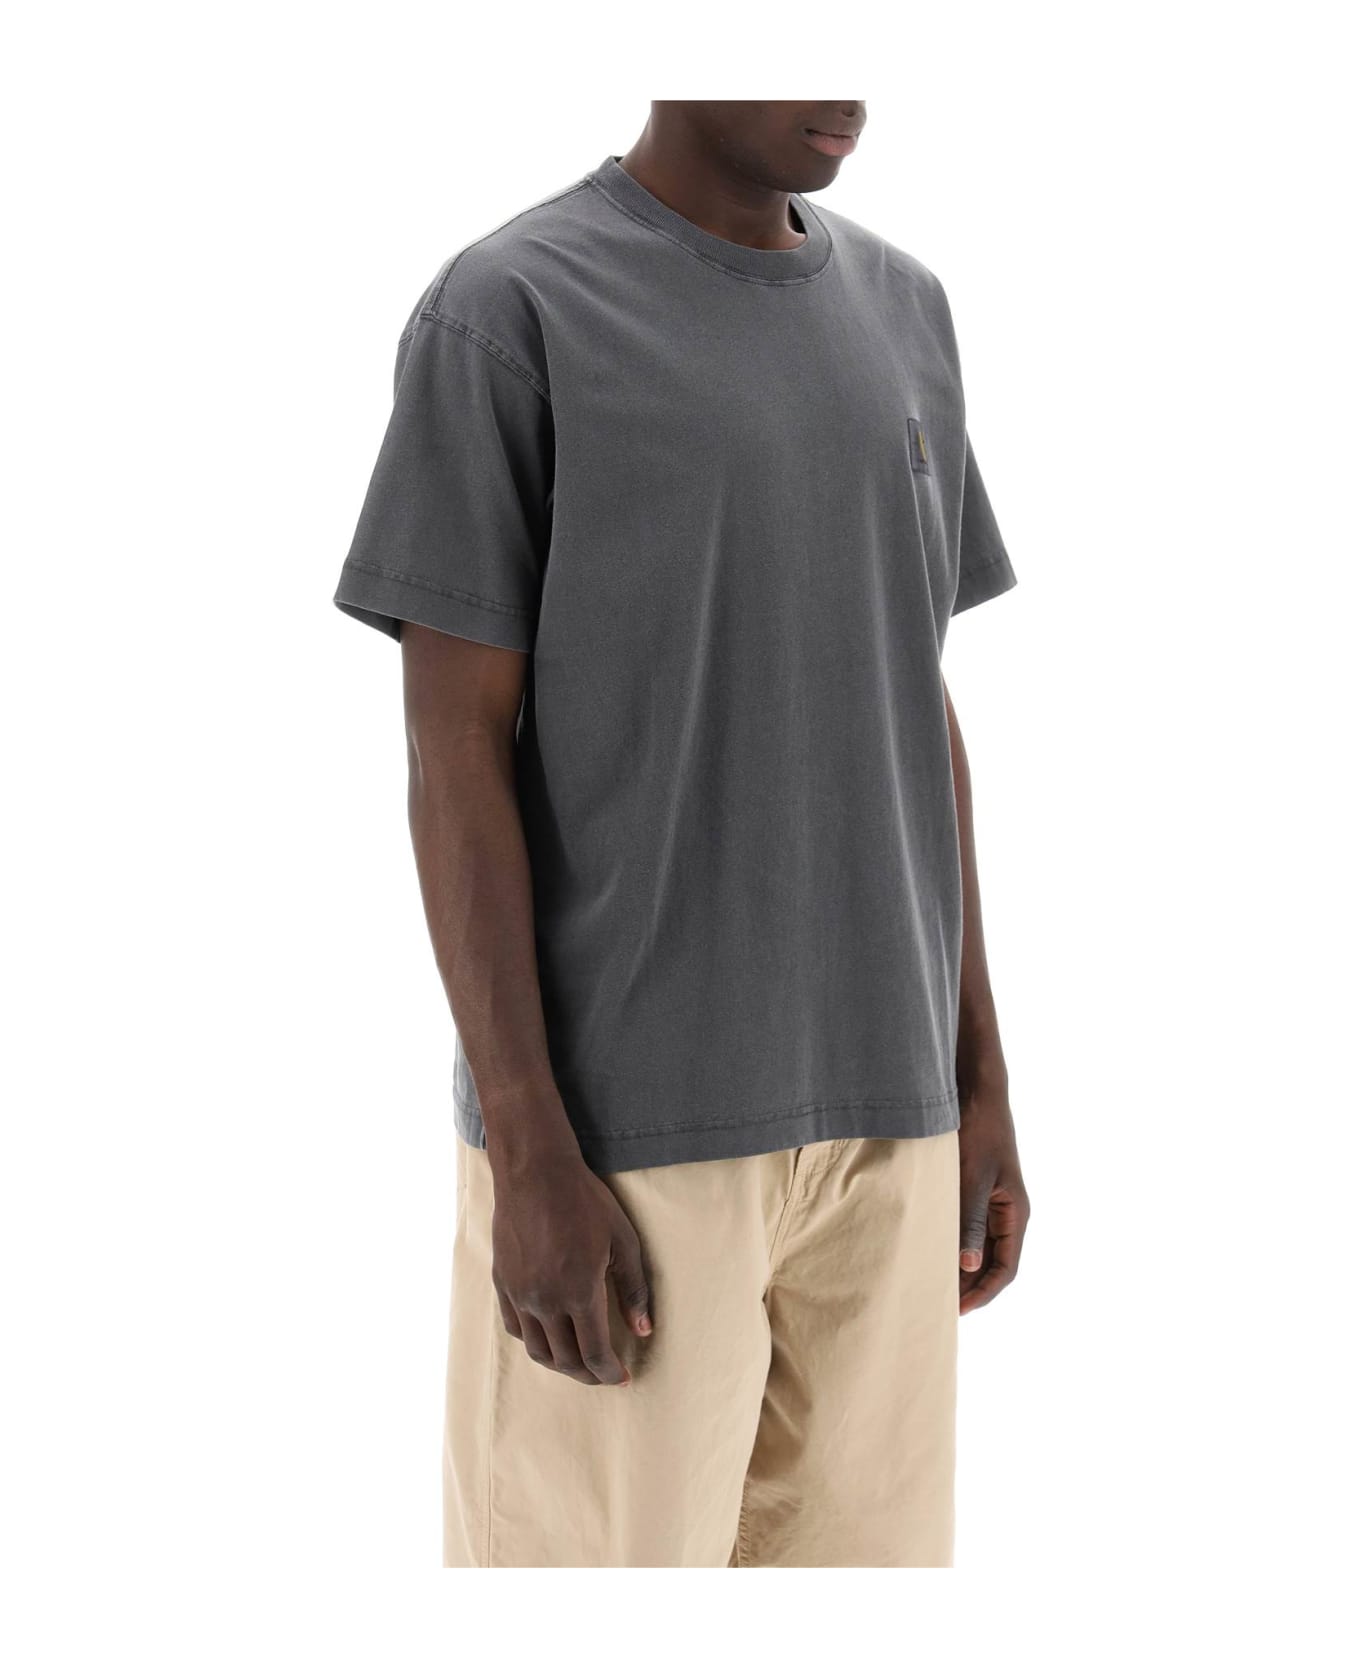 Carhartt Nelson T-shirt - .gd Charcoal Garment Dyed